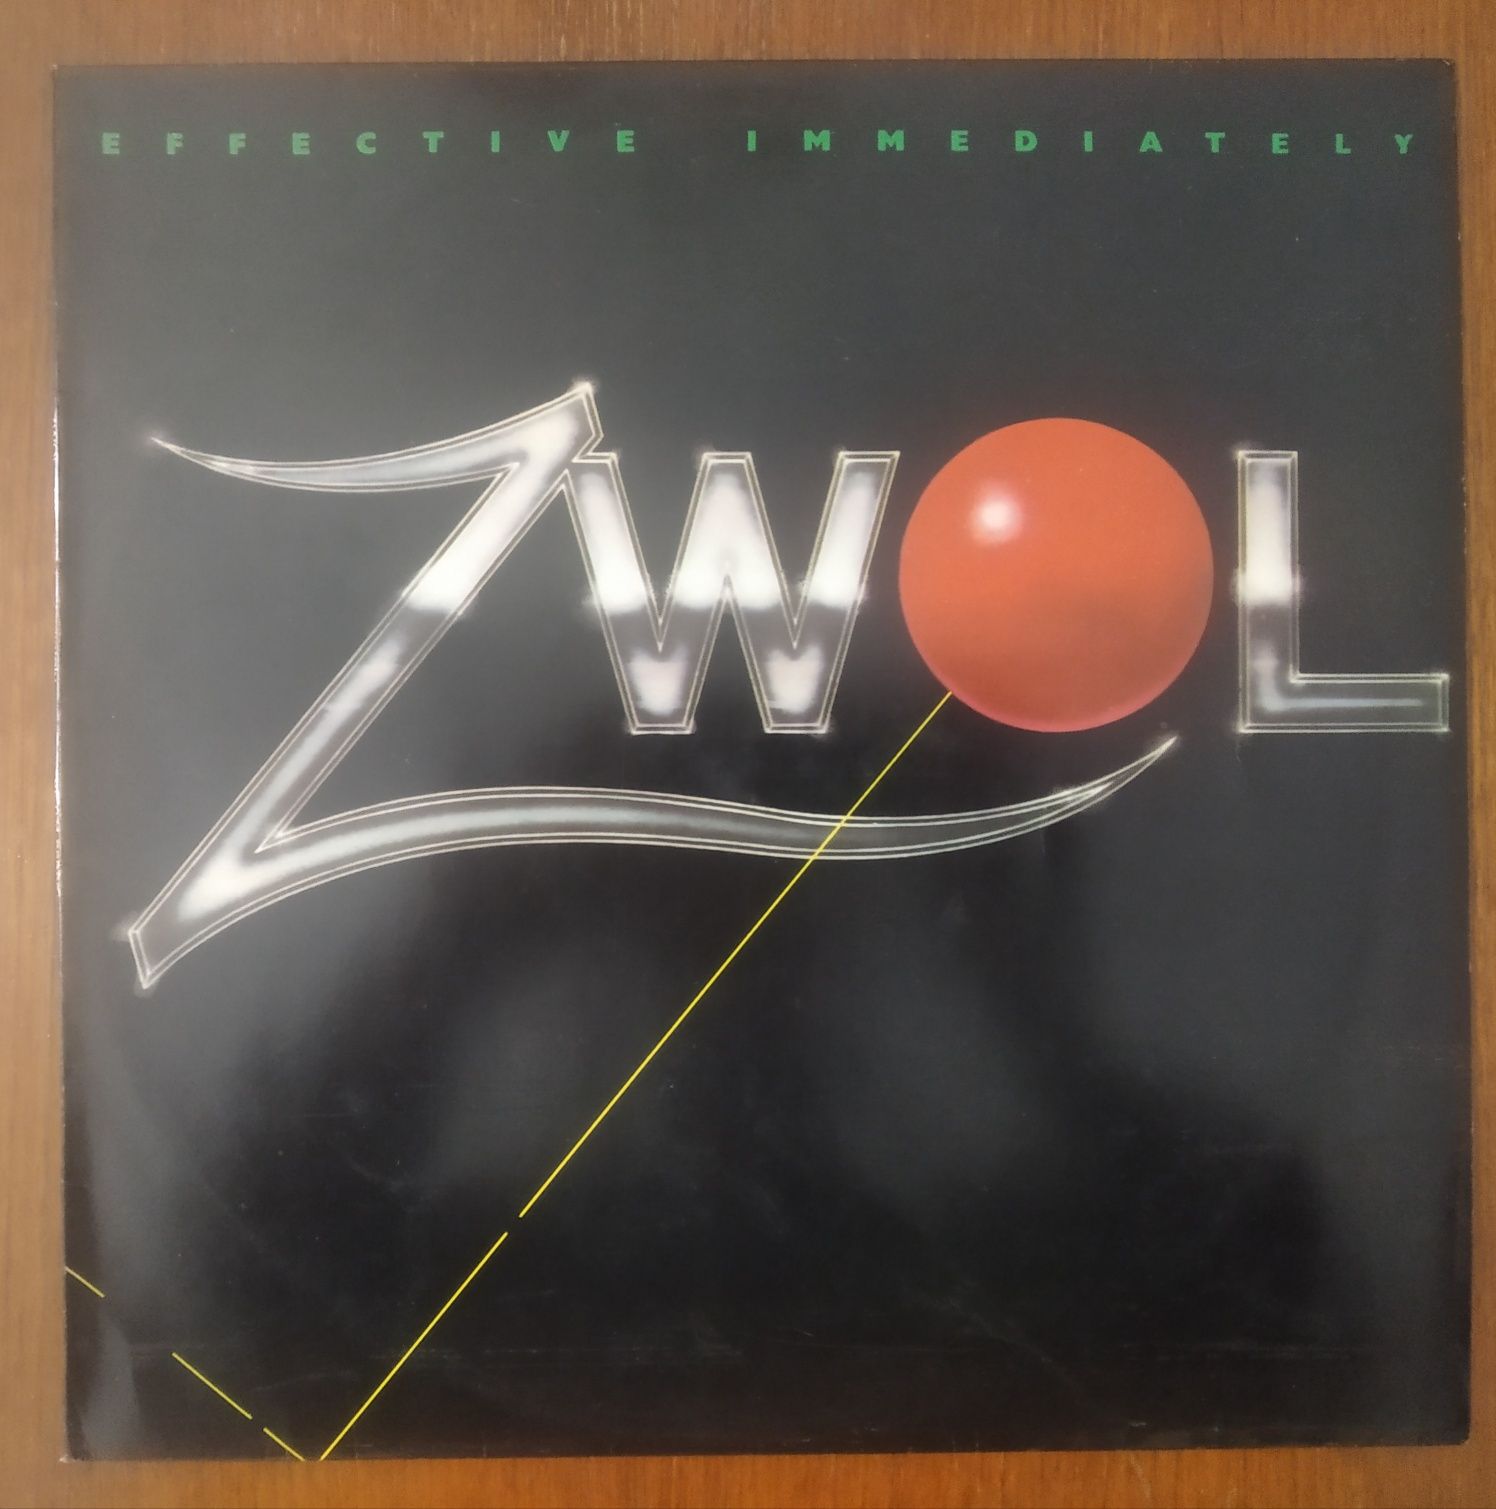 Zwol disco de vinil "Effective Immediately".